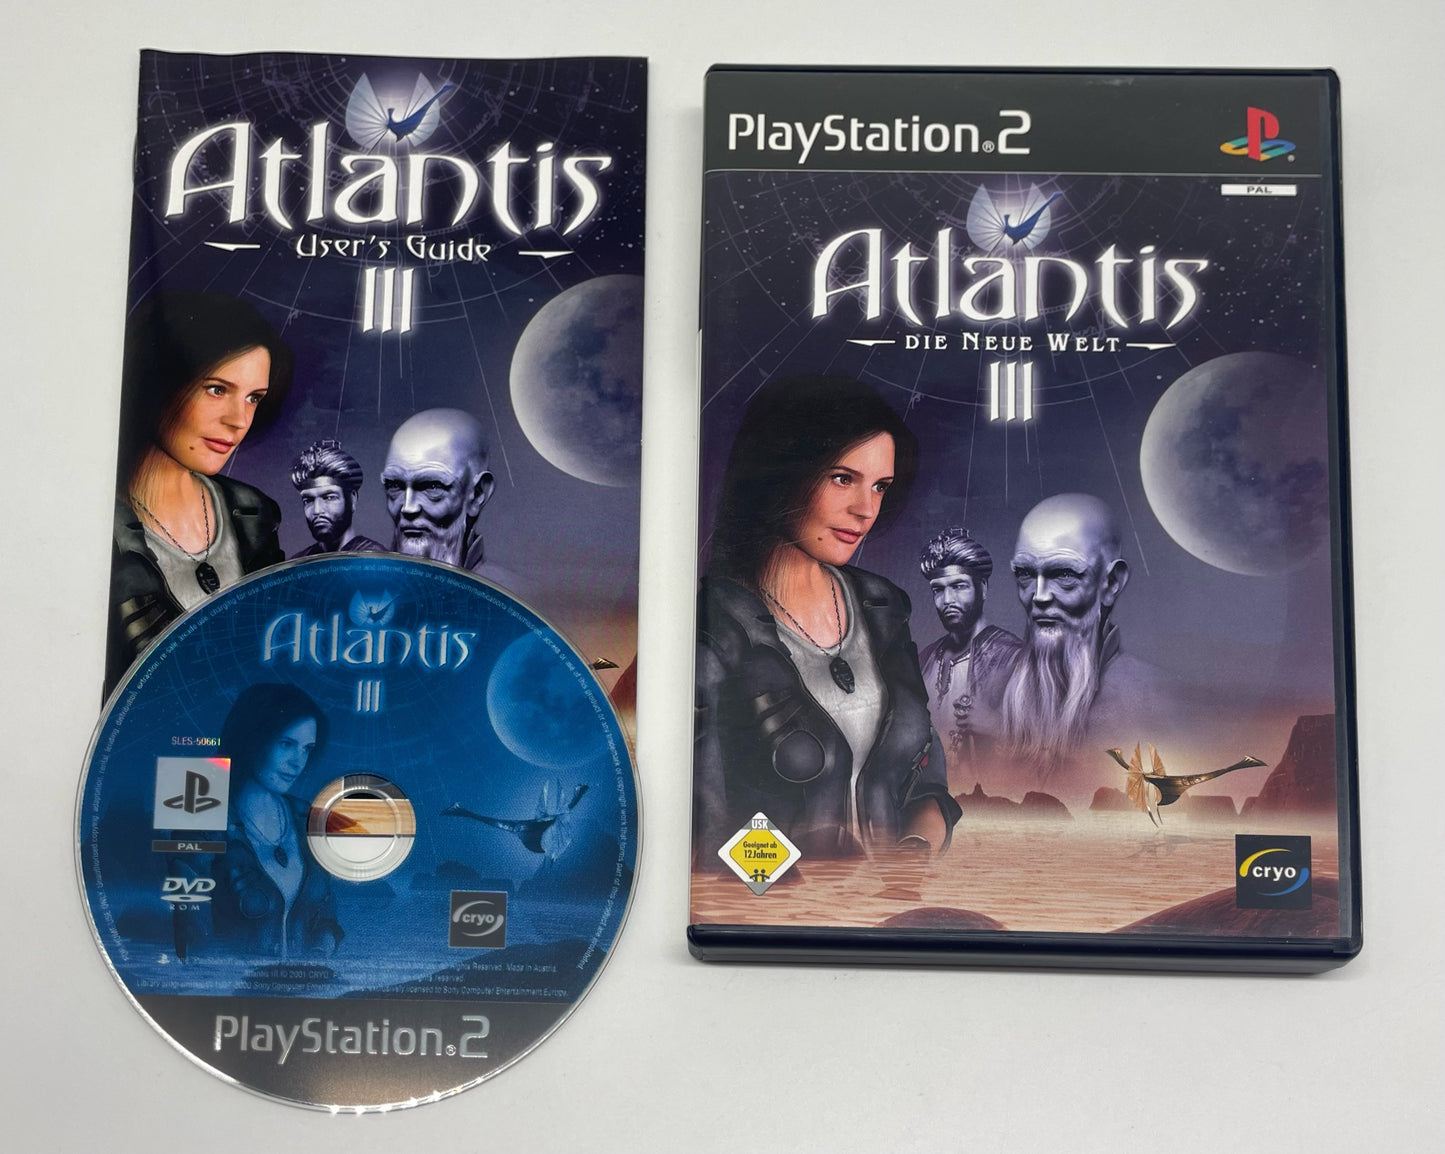 Atlantis III: Die neue Welt OVP